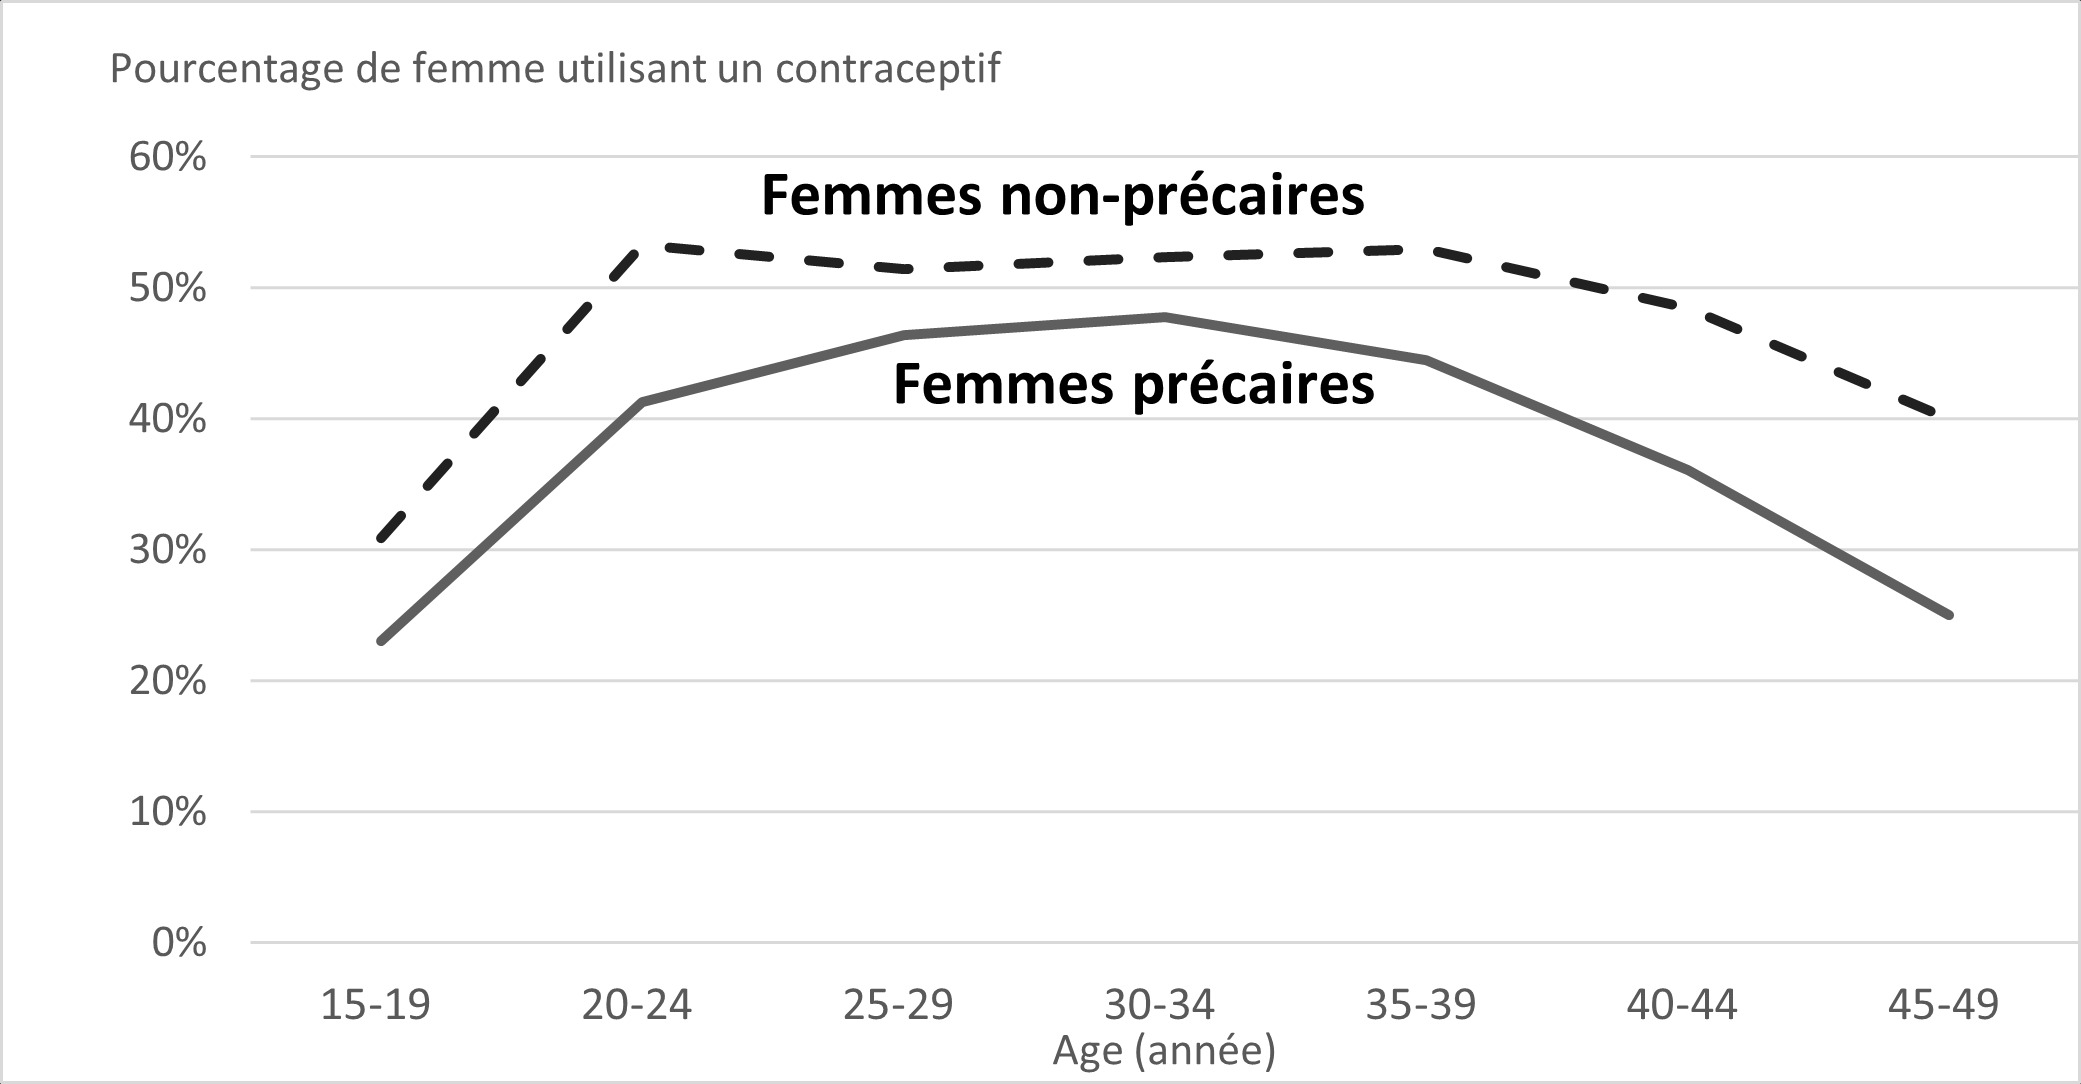  Utilisation des contraceptifs remboursés par les femmes précaires et les femmes non-précaires